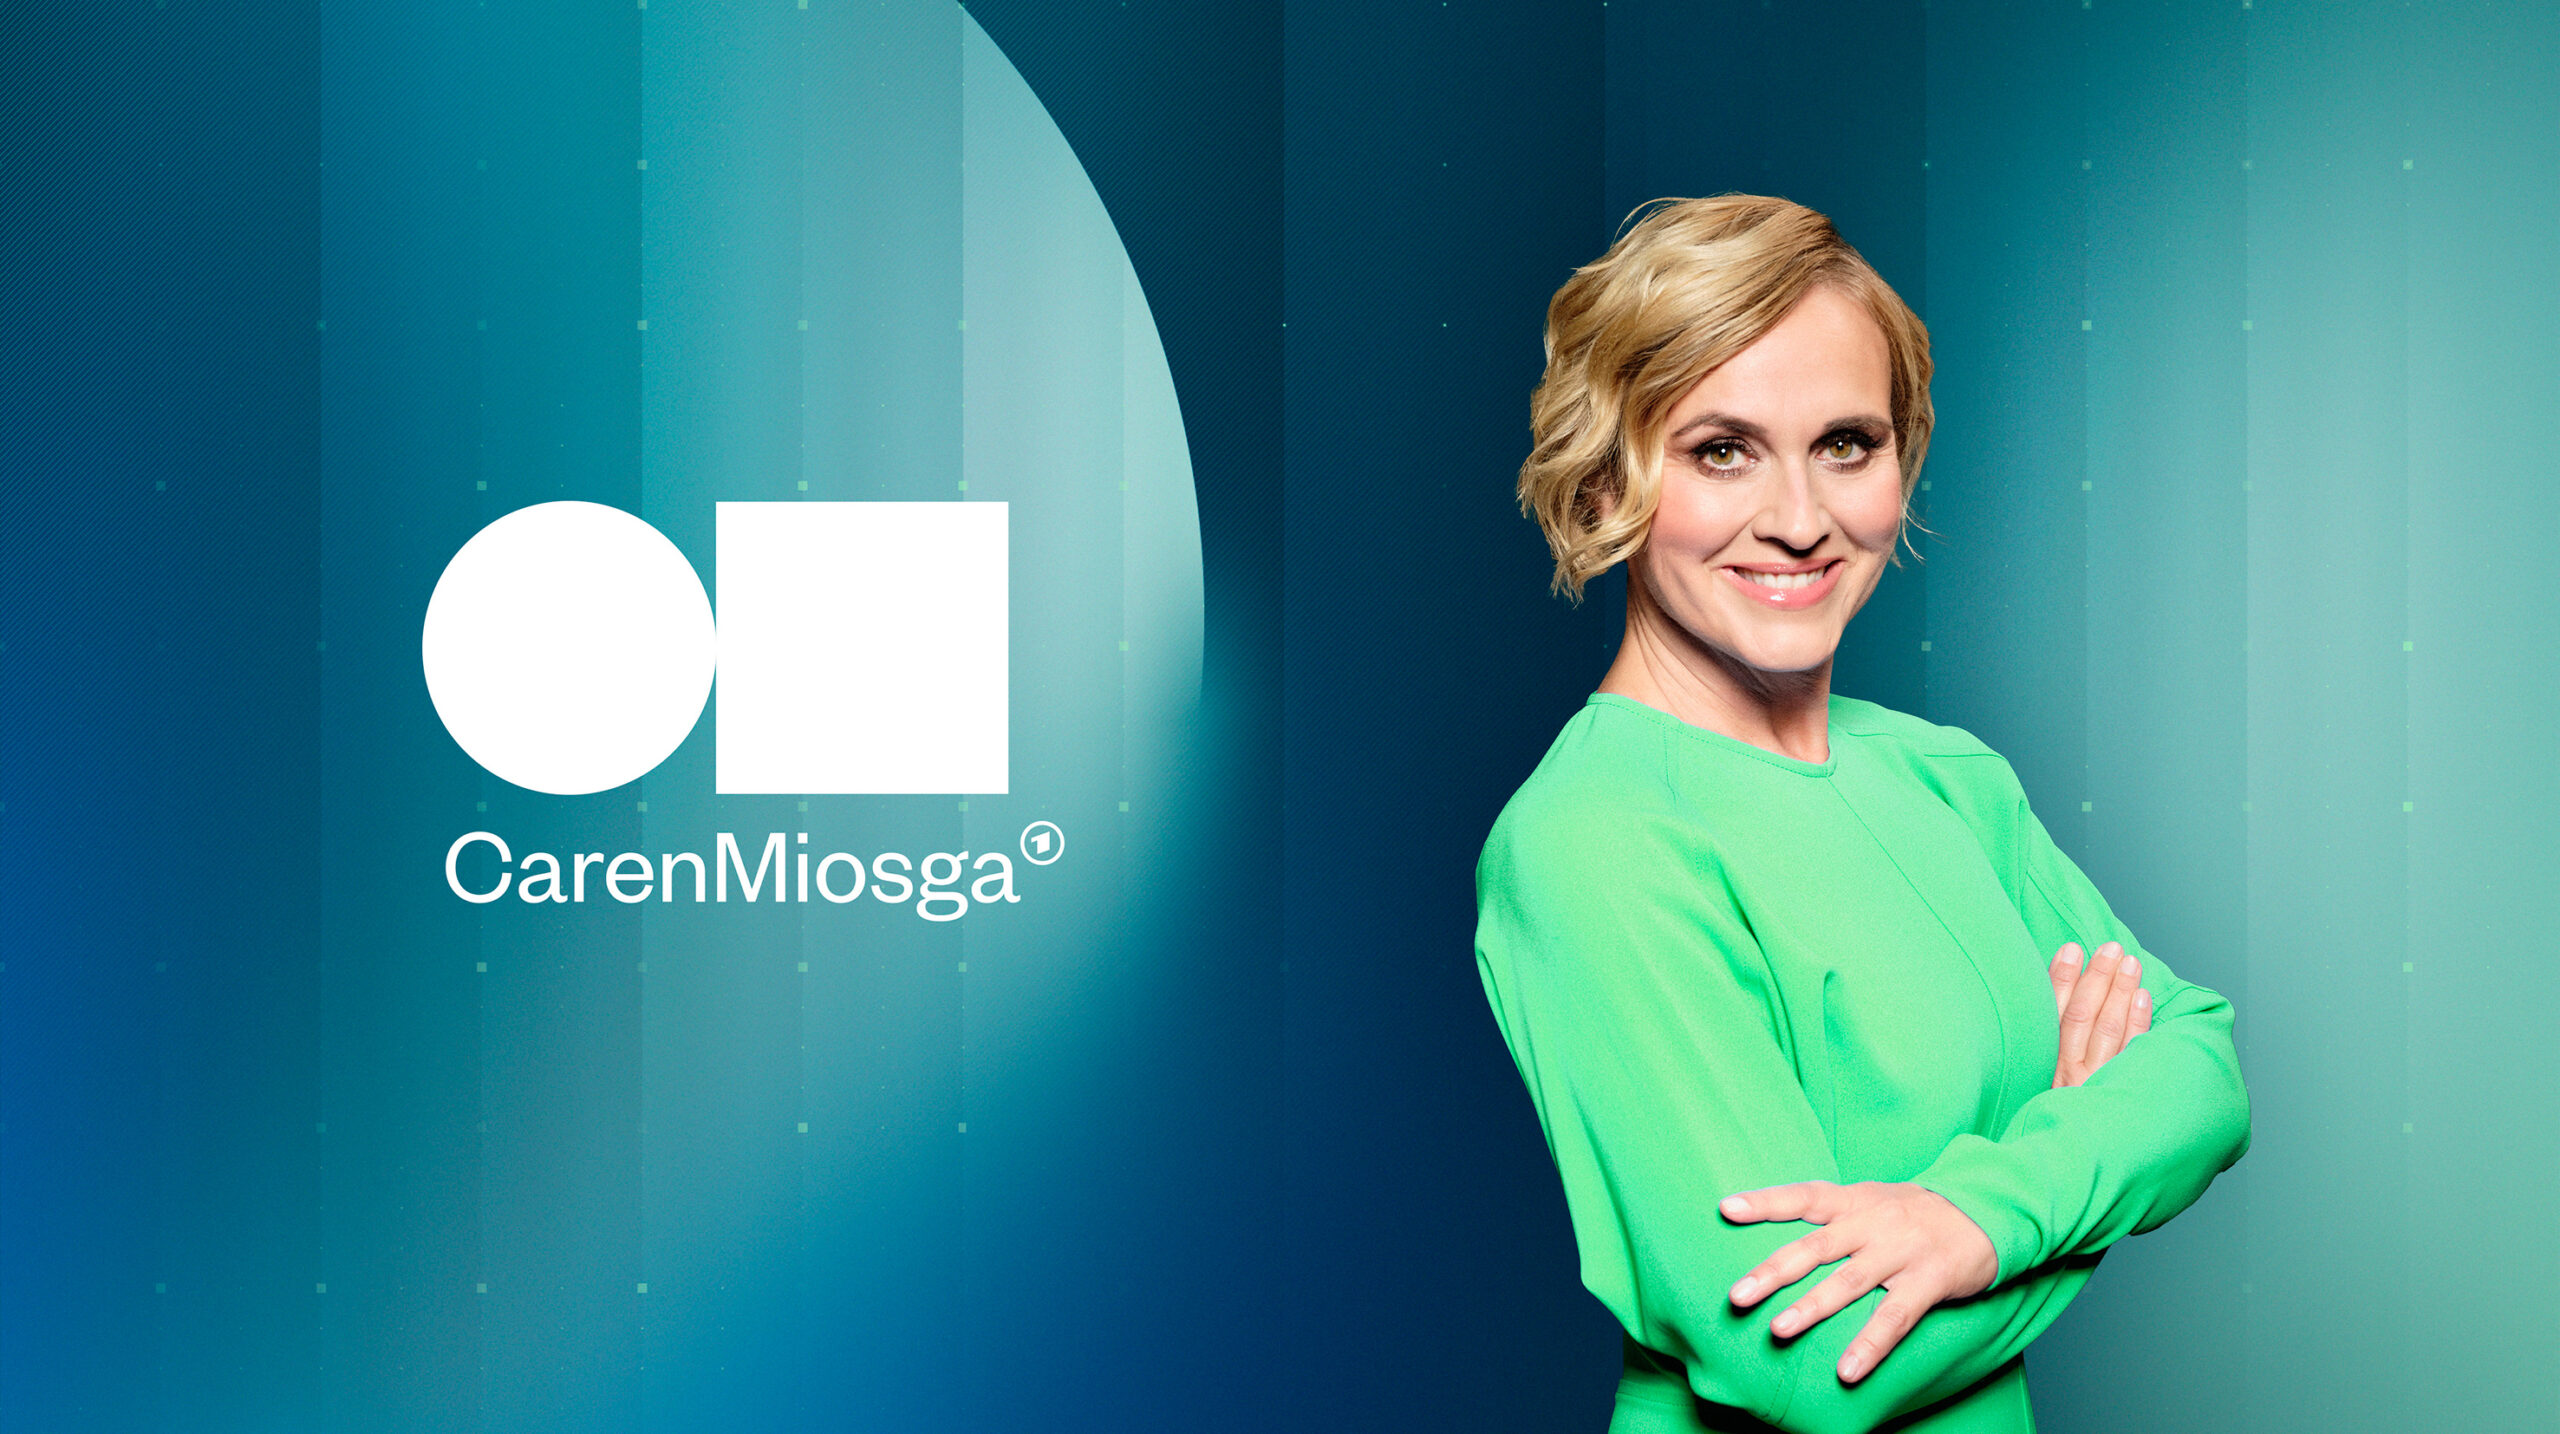 Das Keyvisual der neuen ARD-Sendung "Caren Miosga": Die Moderatorin steht rechts, links ist das Logo zu sehen.